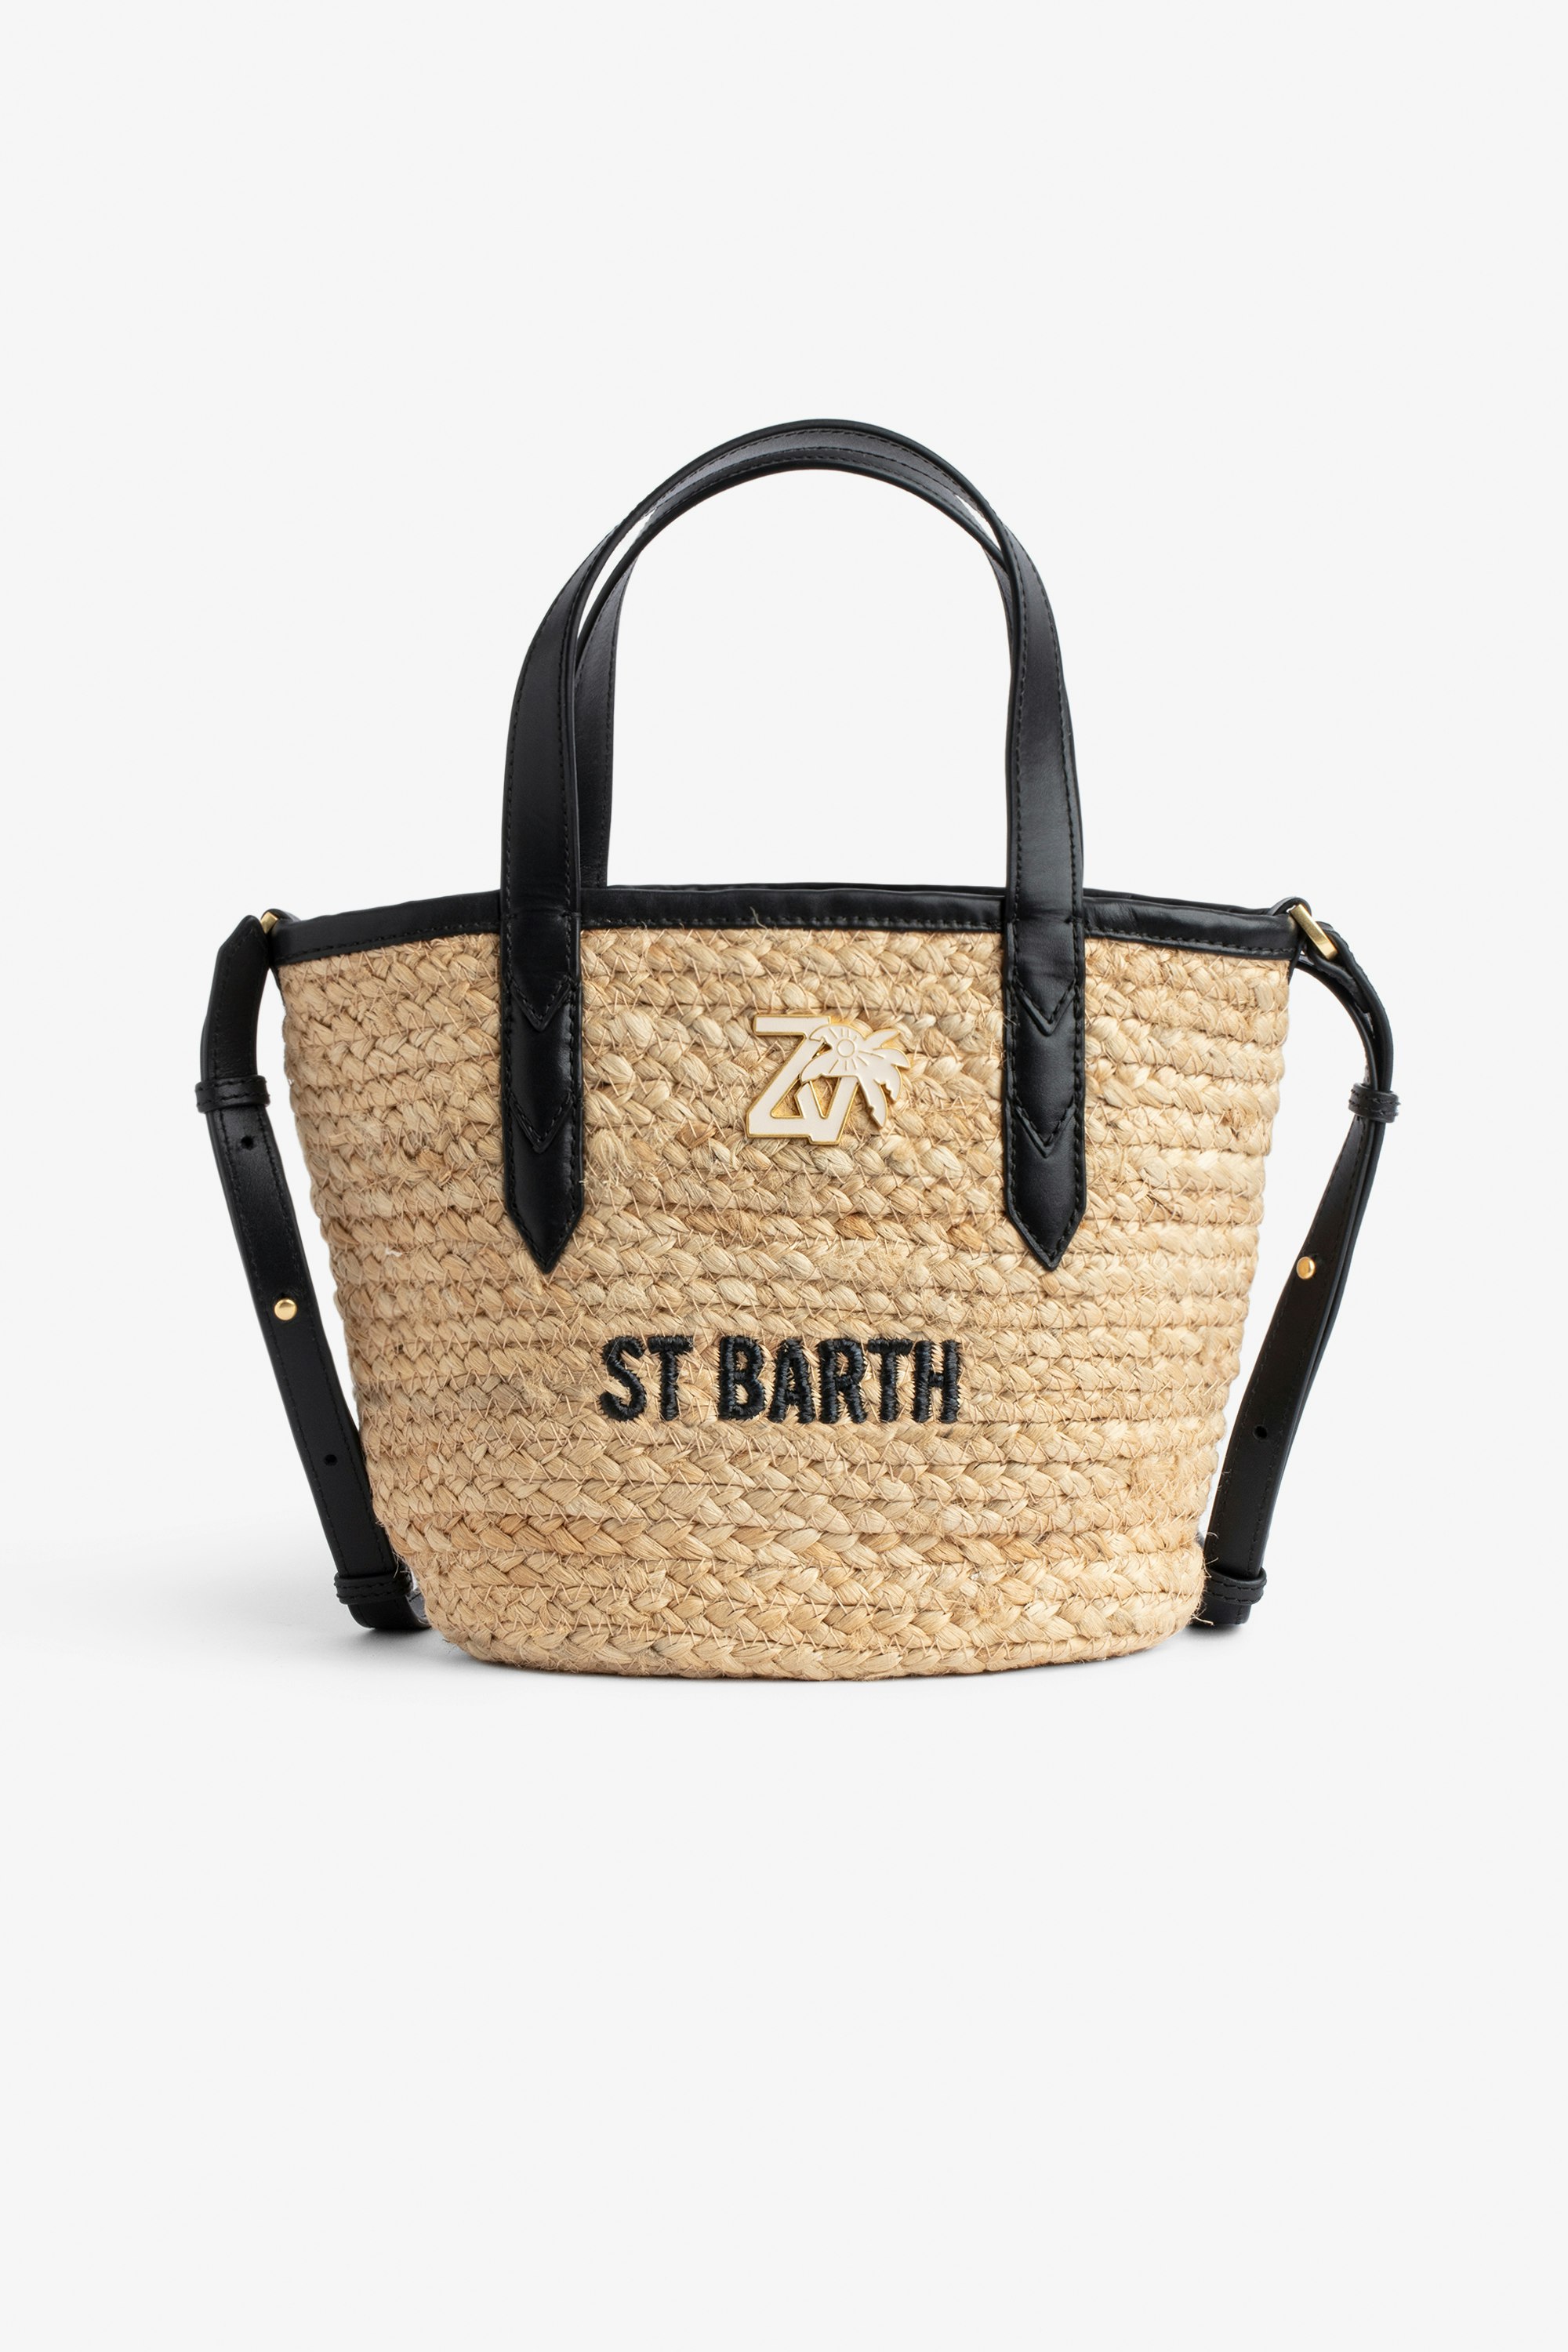 Sac Le Baby Beach - Sac en paille à bandoulière en cuir noir, brodé "St Barth" et orné d'un charm ZV.